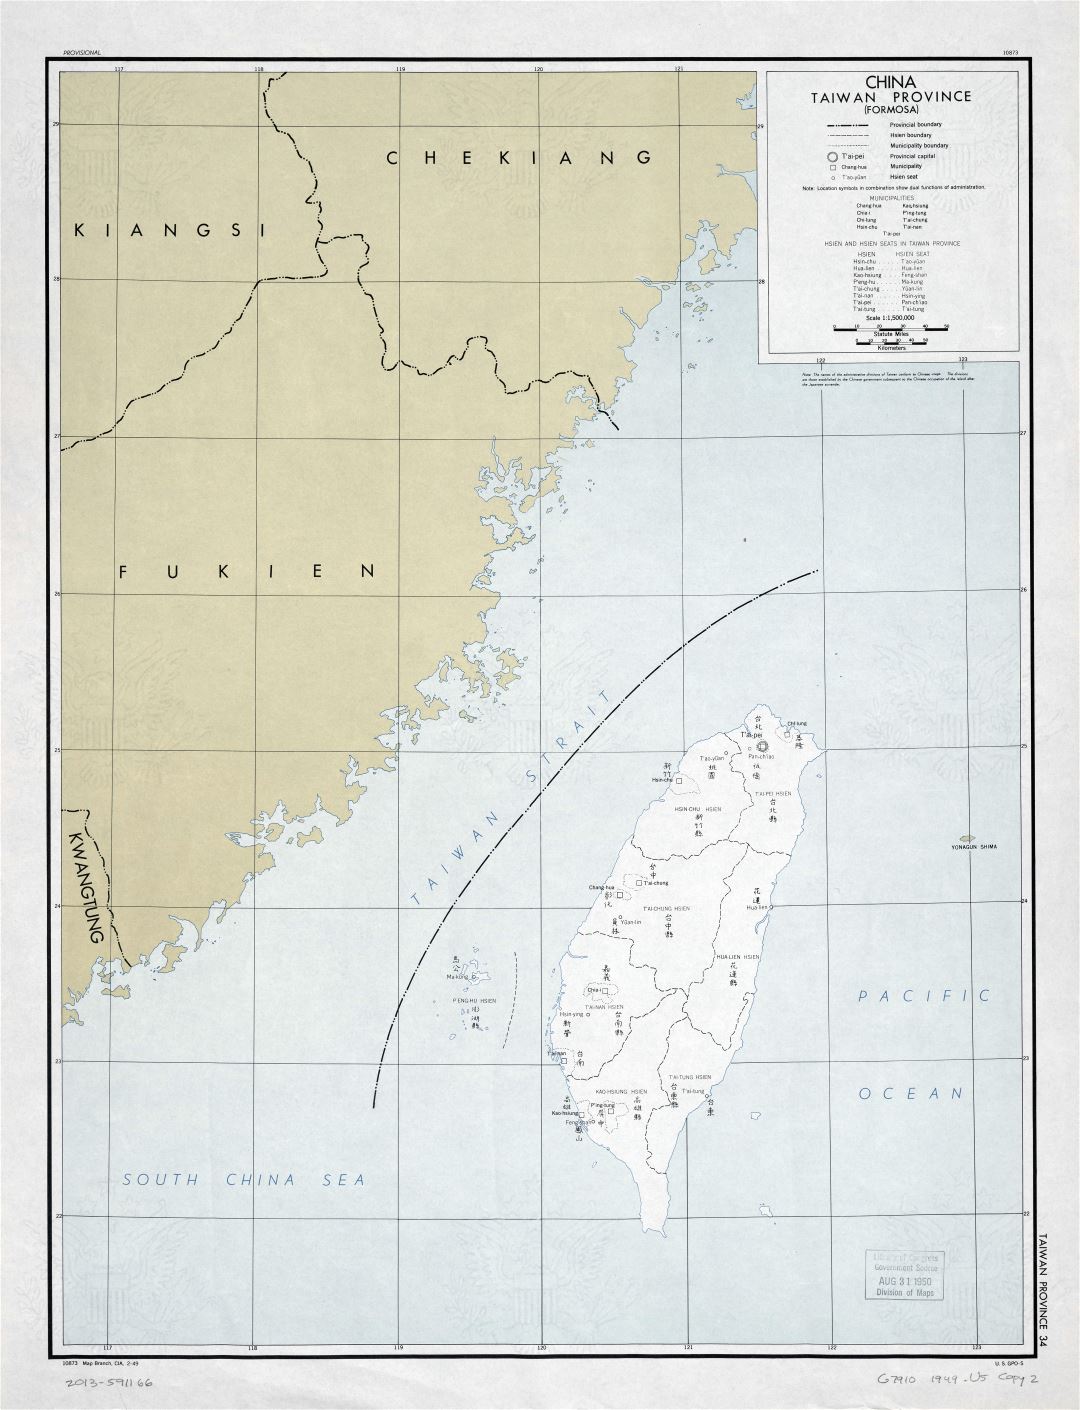 Крупномасштабная детальная старая политическая и административная карта Китая, провинции Тайваня (Формоза) - 1949